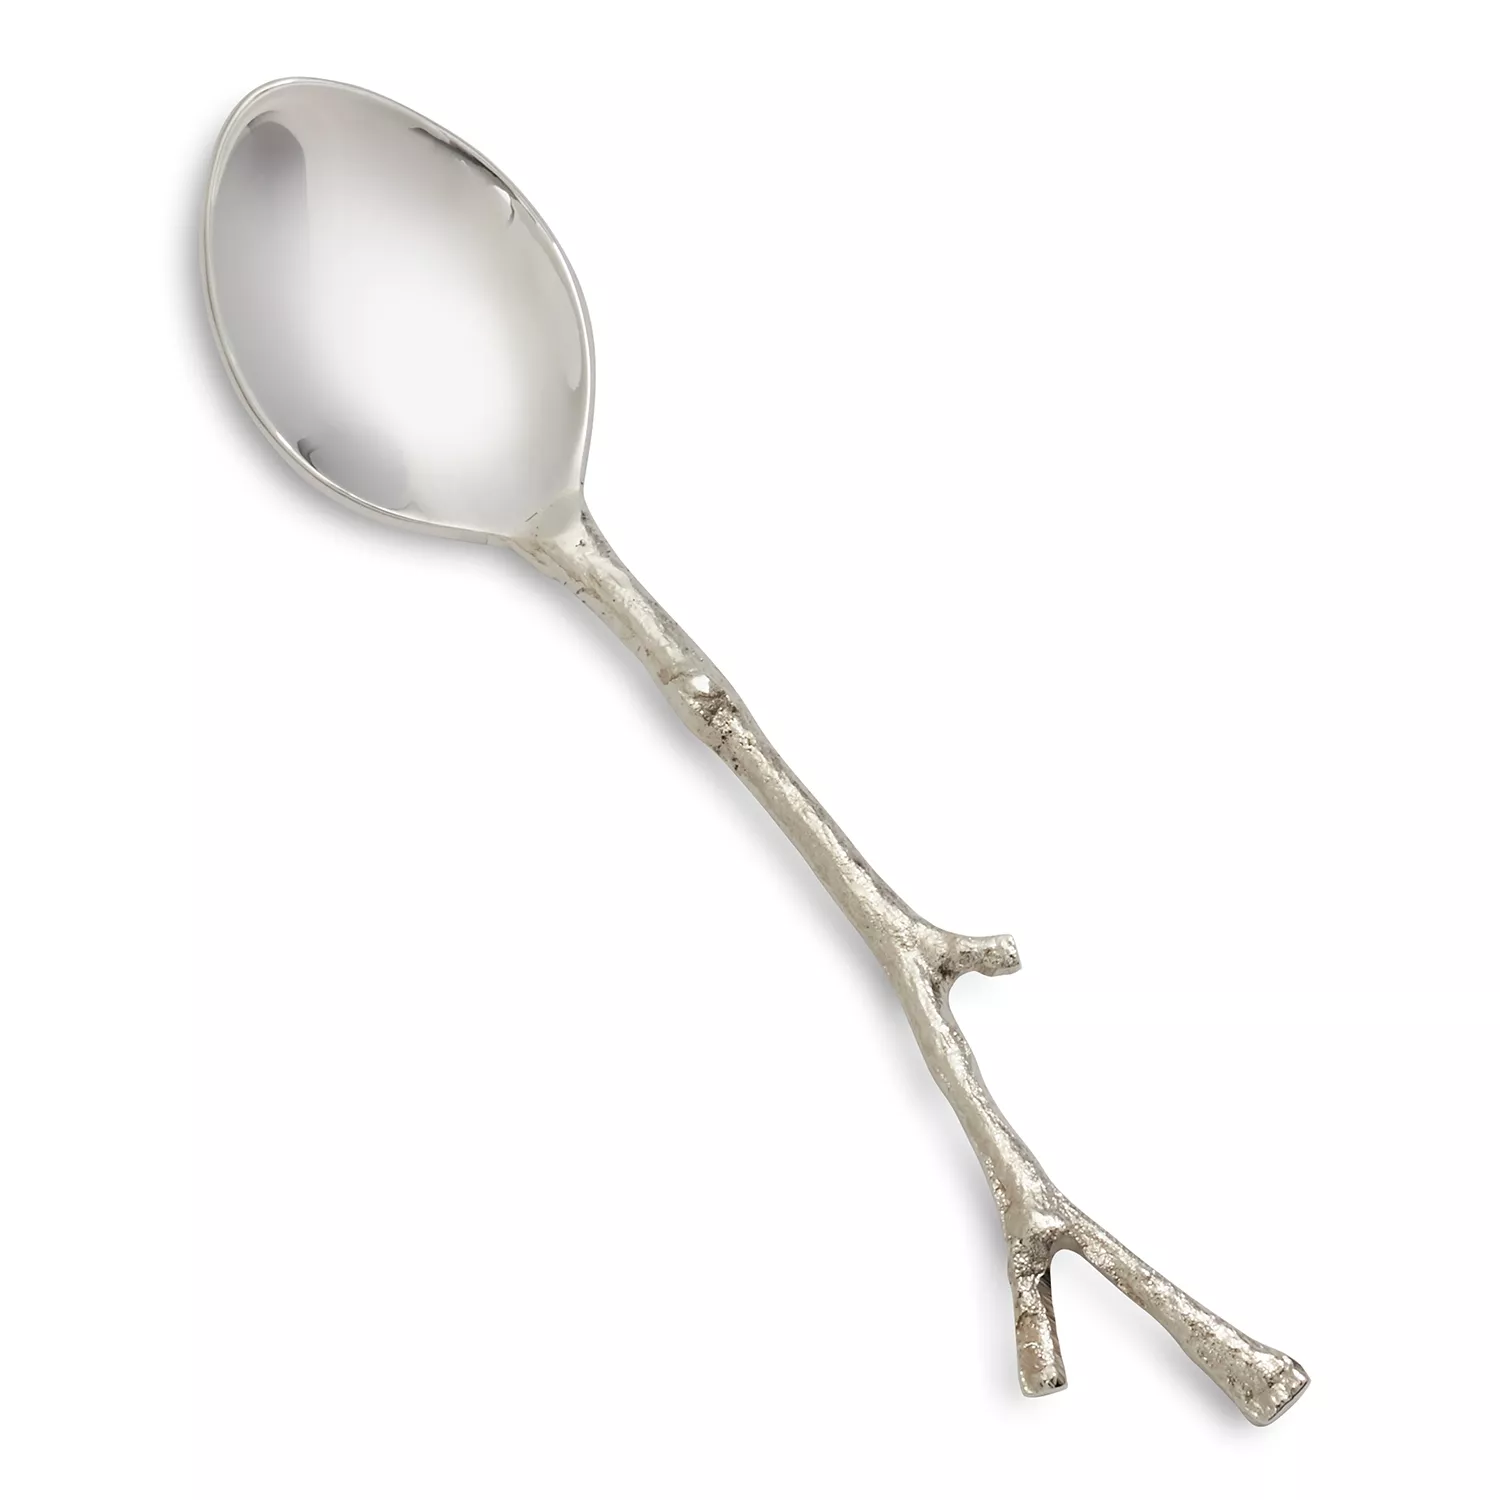 Twig Demitasse Spoon